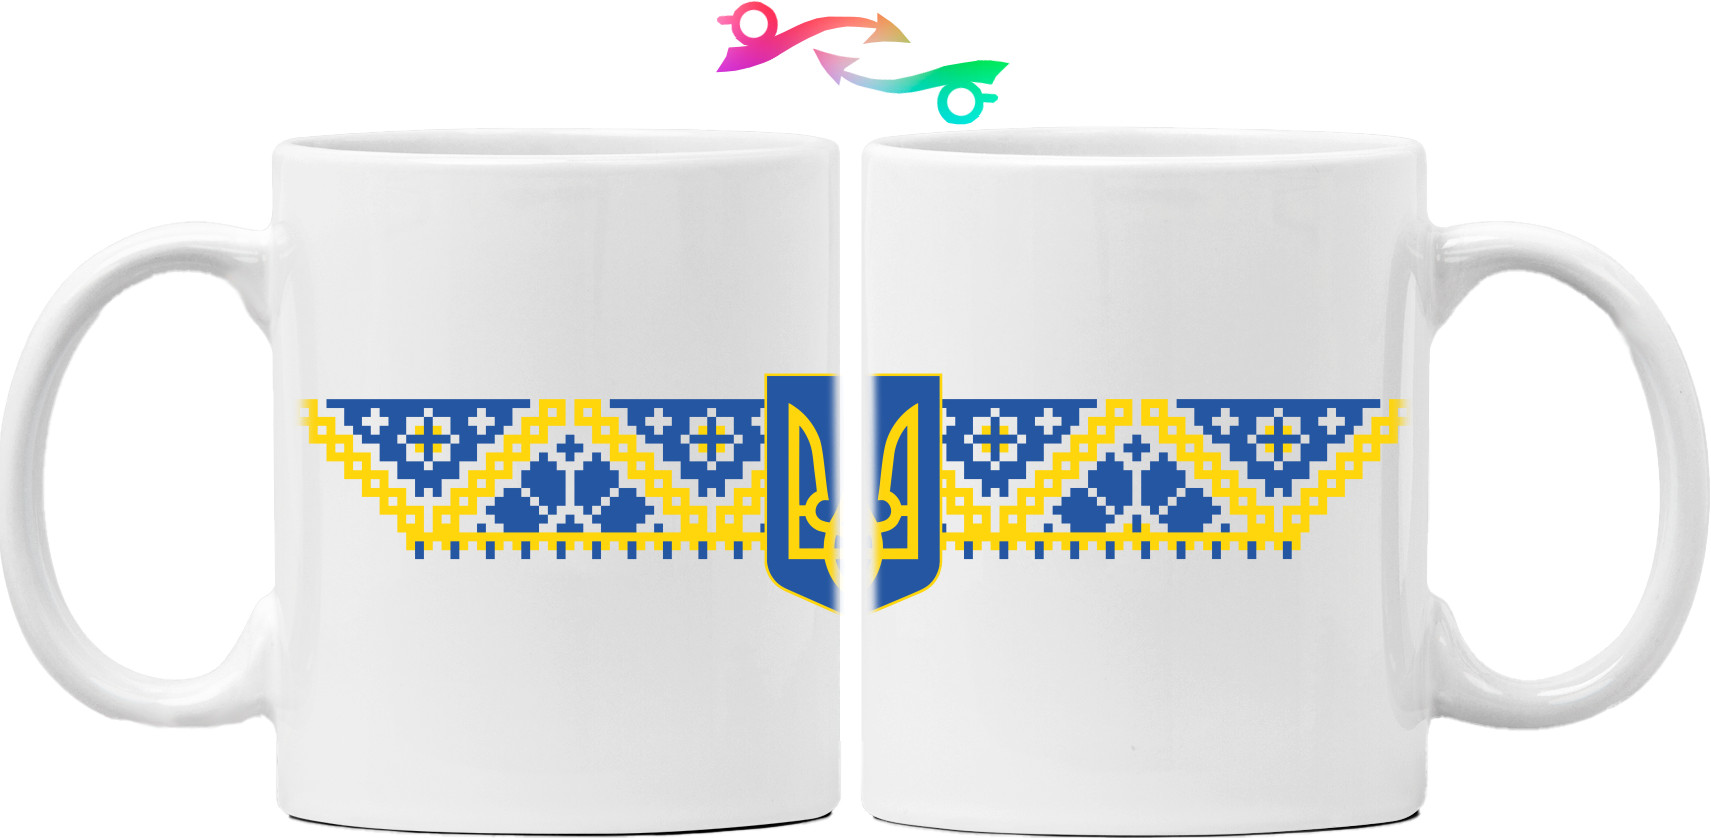 герб України з вишивкою